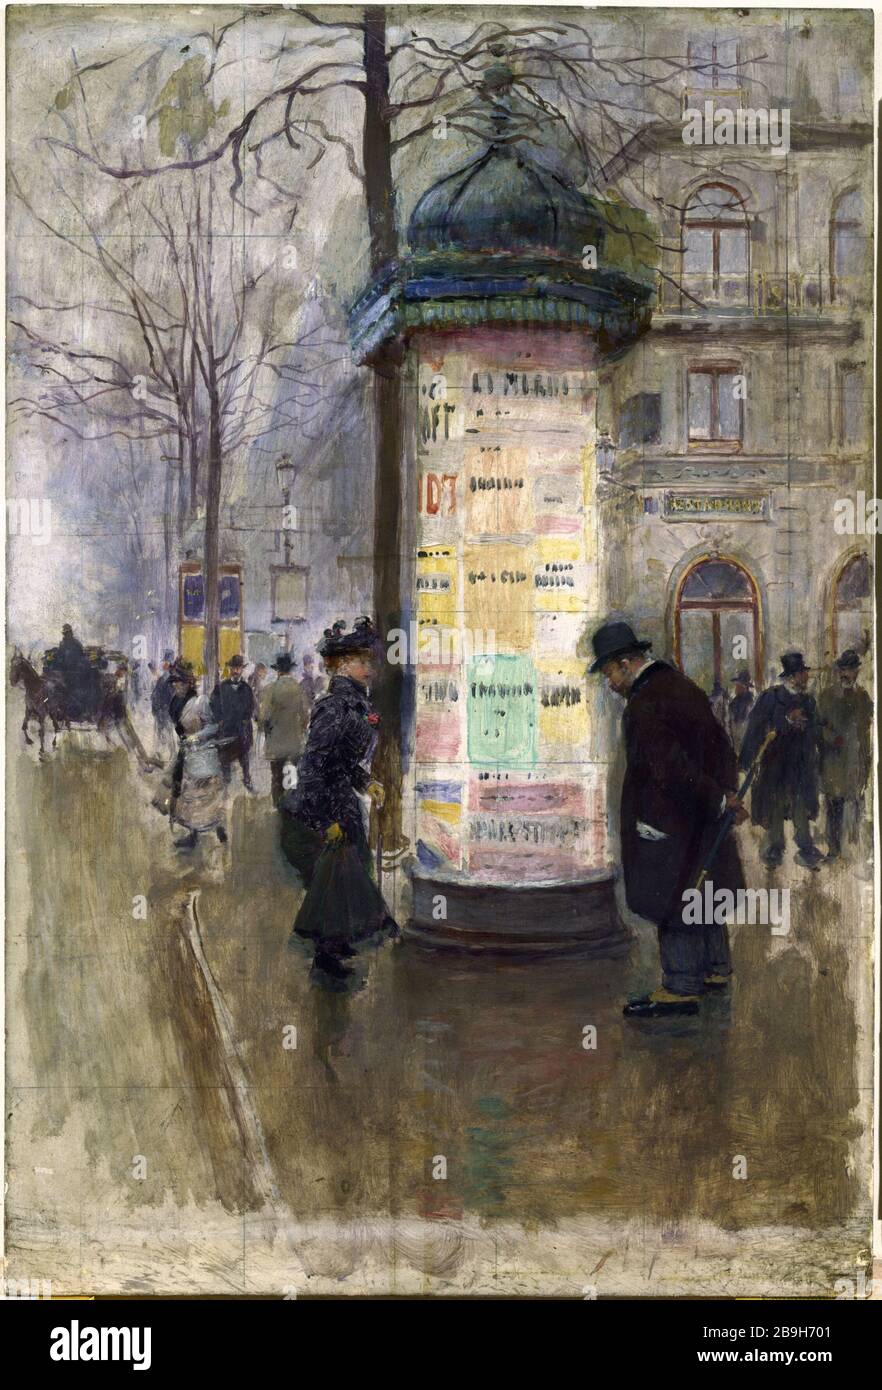 COLUMN MORRIS Jean Béraud (1849-1936). 'La Colonne Morris (angle de la rue Laffite et du boulevard des Italiens)'. Huile sur bois. Paris, musée Carnavalet. Stock Photo